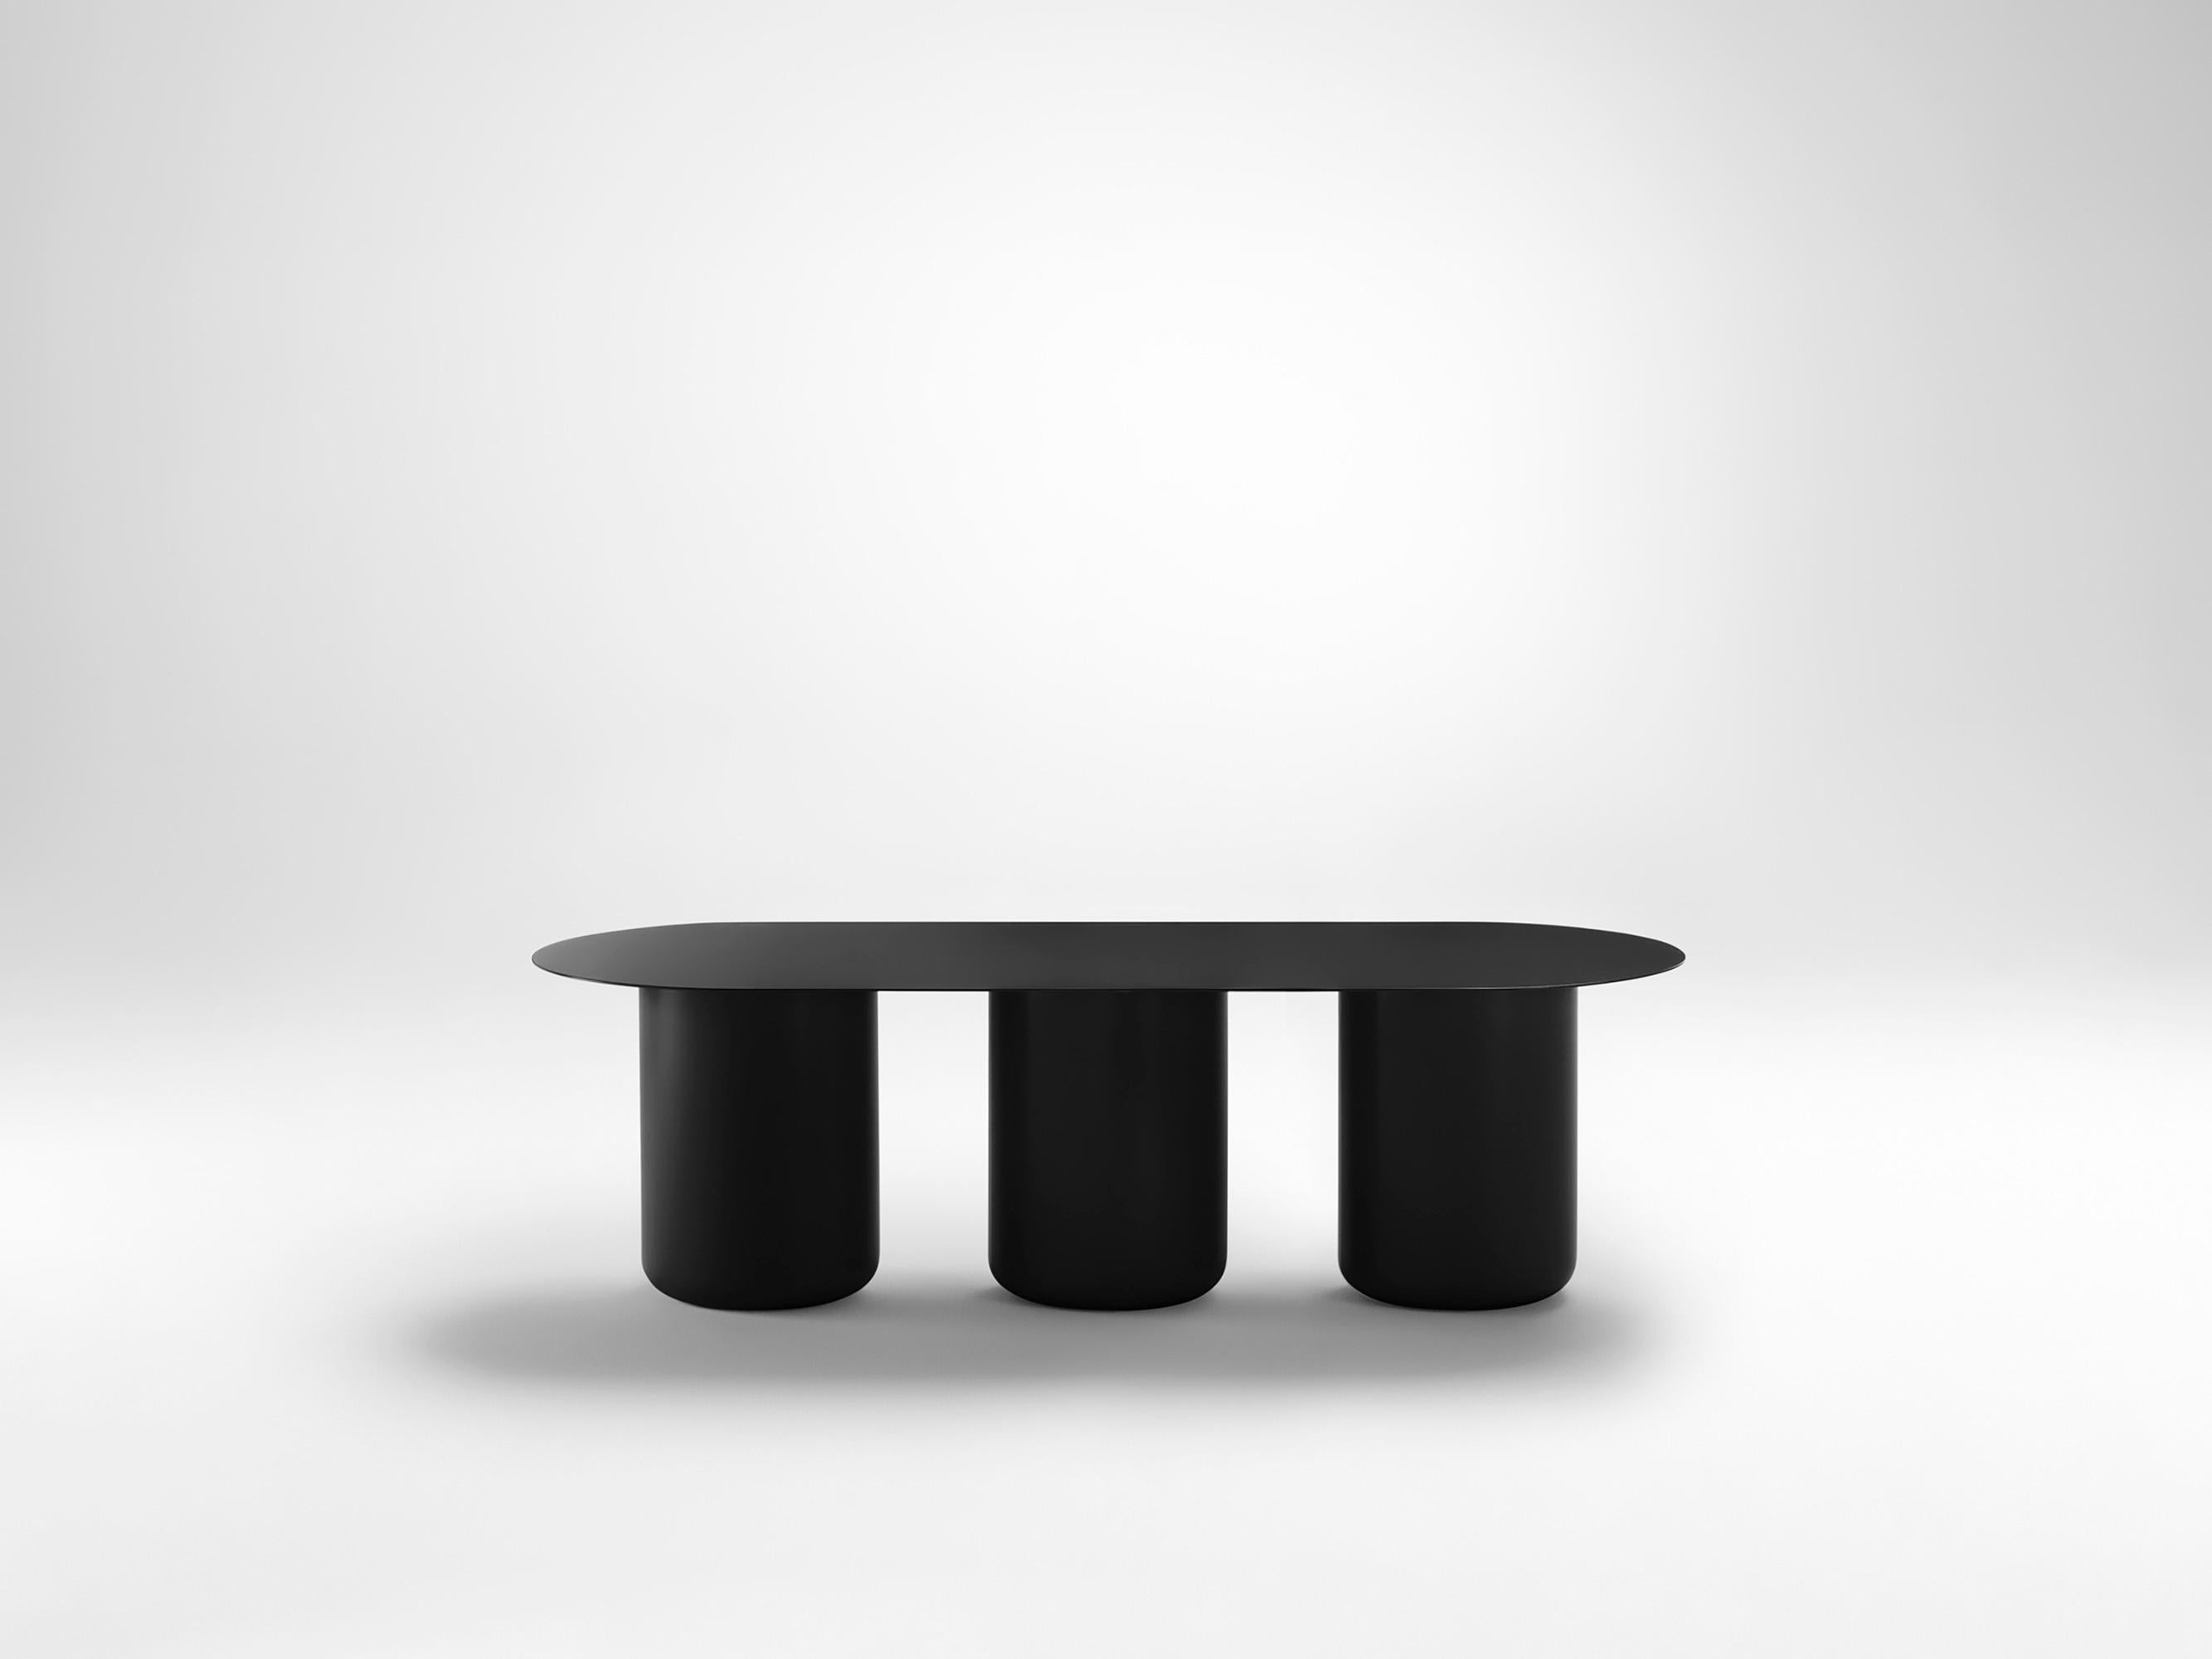 Schwarzer Tisch 03 von Coco Flip
Abmessungen: T 48 / 122 x H 32 / 36 / 40 / 42 cm
MATERIALIEN: Baustahl, pulverbeschichtet mit Zinkgrundierung. 
Gewicht: 30 kg

Coco Flip ist ein Studio für Möbel- und Beleuchtungsdesign in Melbourne, das von uns,